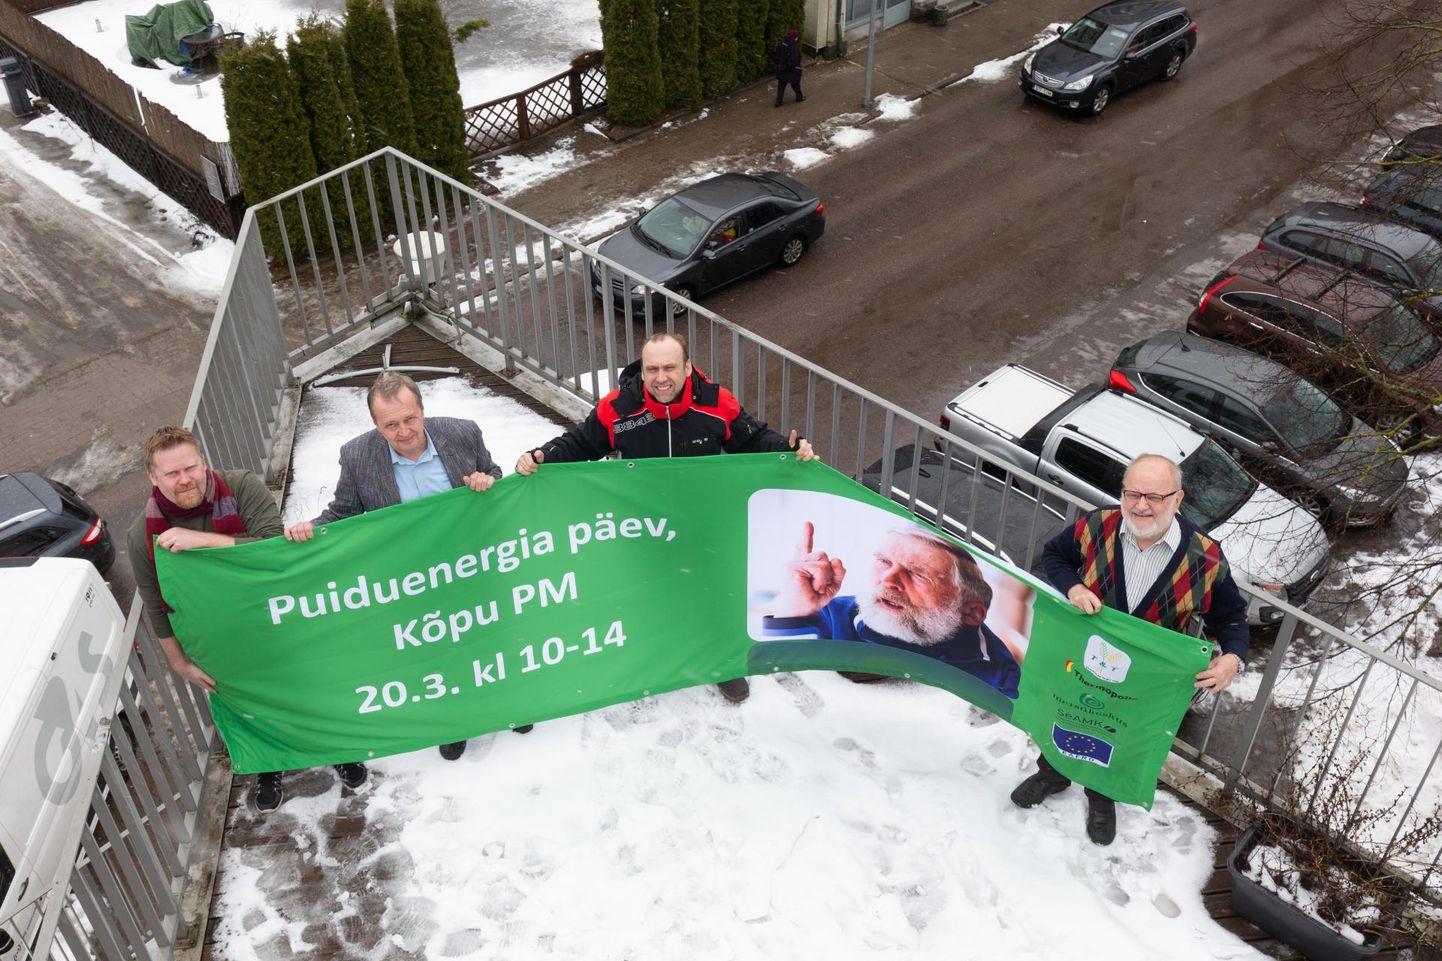 20. märtsil tutvustatakse uudset soojuse müügi võimalust Kõpu puiduenergiapäeval, kuhu tuleb puid lõhkuma ka Soome olümpiakangelane Juha Mieto. Tatu Viitasaari (vasakult), Lembit Lepasalu, Juha Viirimäki ja Väino Poikalainen panid sellekohase teate üles ka Kõppu.